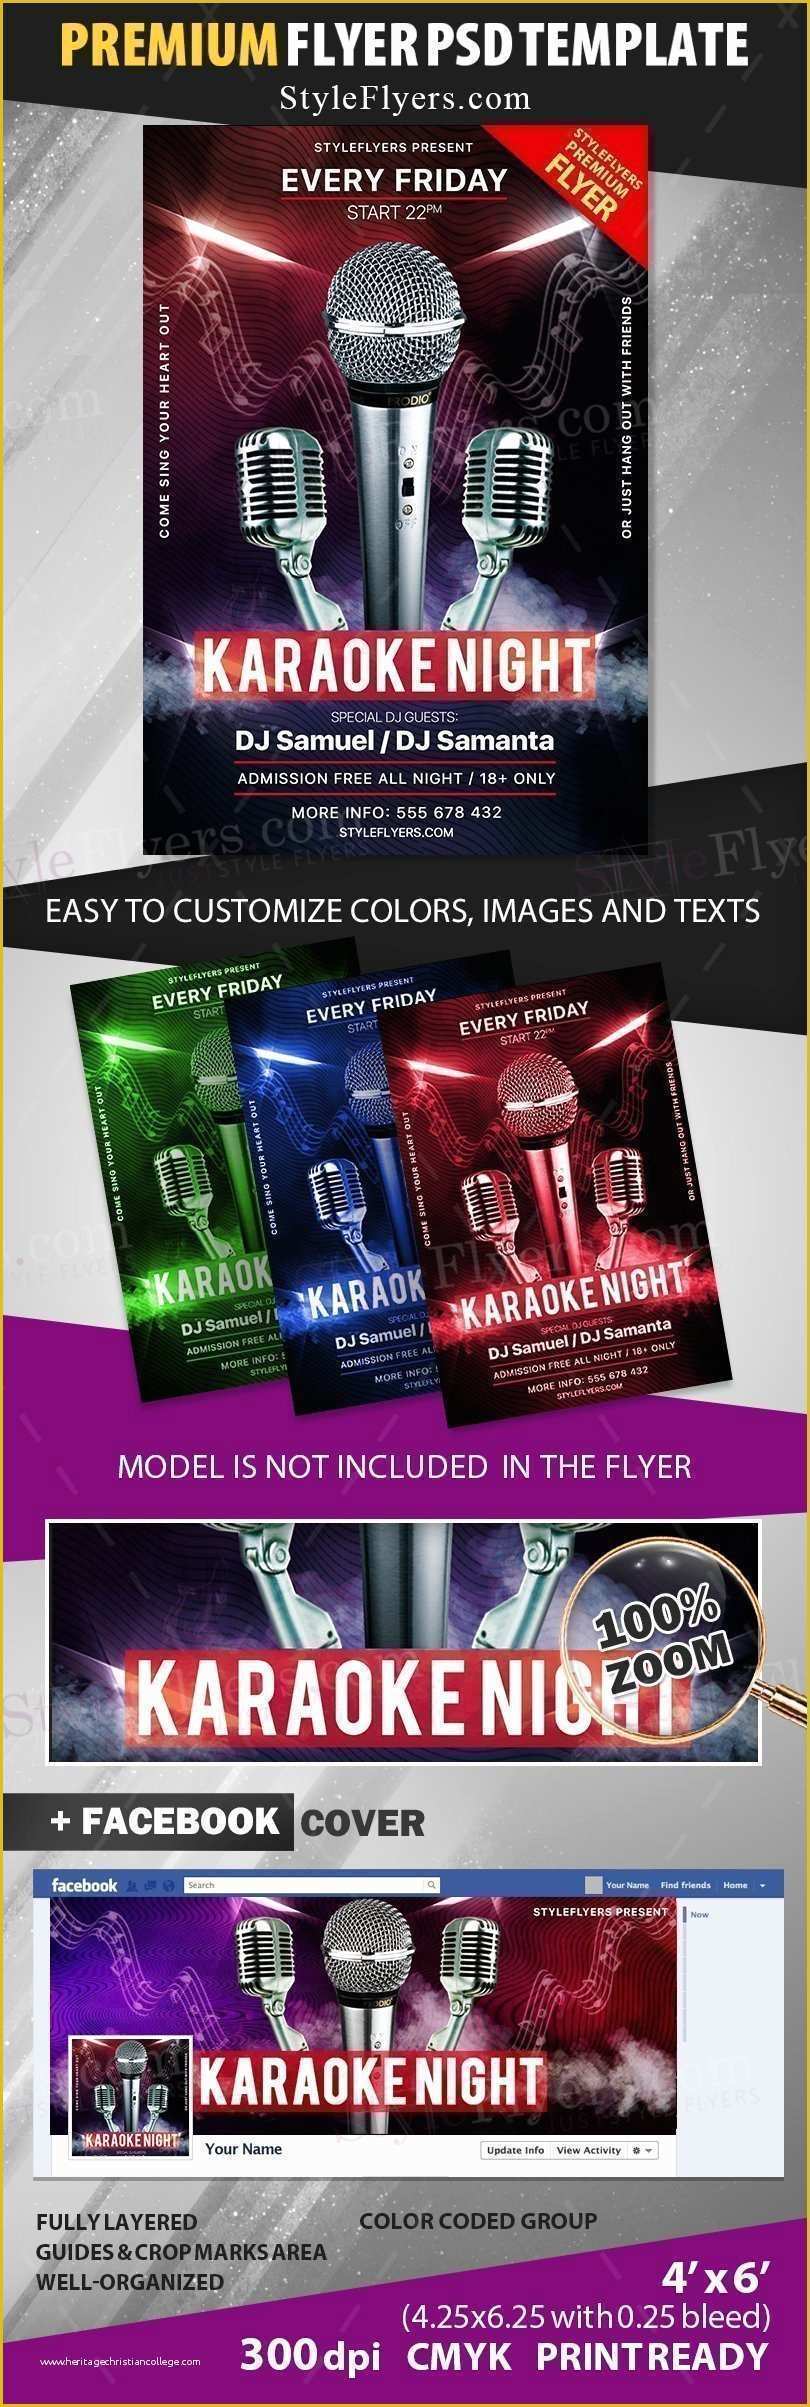 Karaoke Flyer Template Free Of Karaoke Night Psd Flyer Template Styleflyers